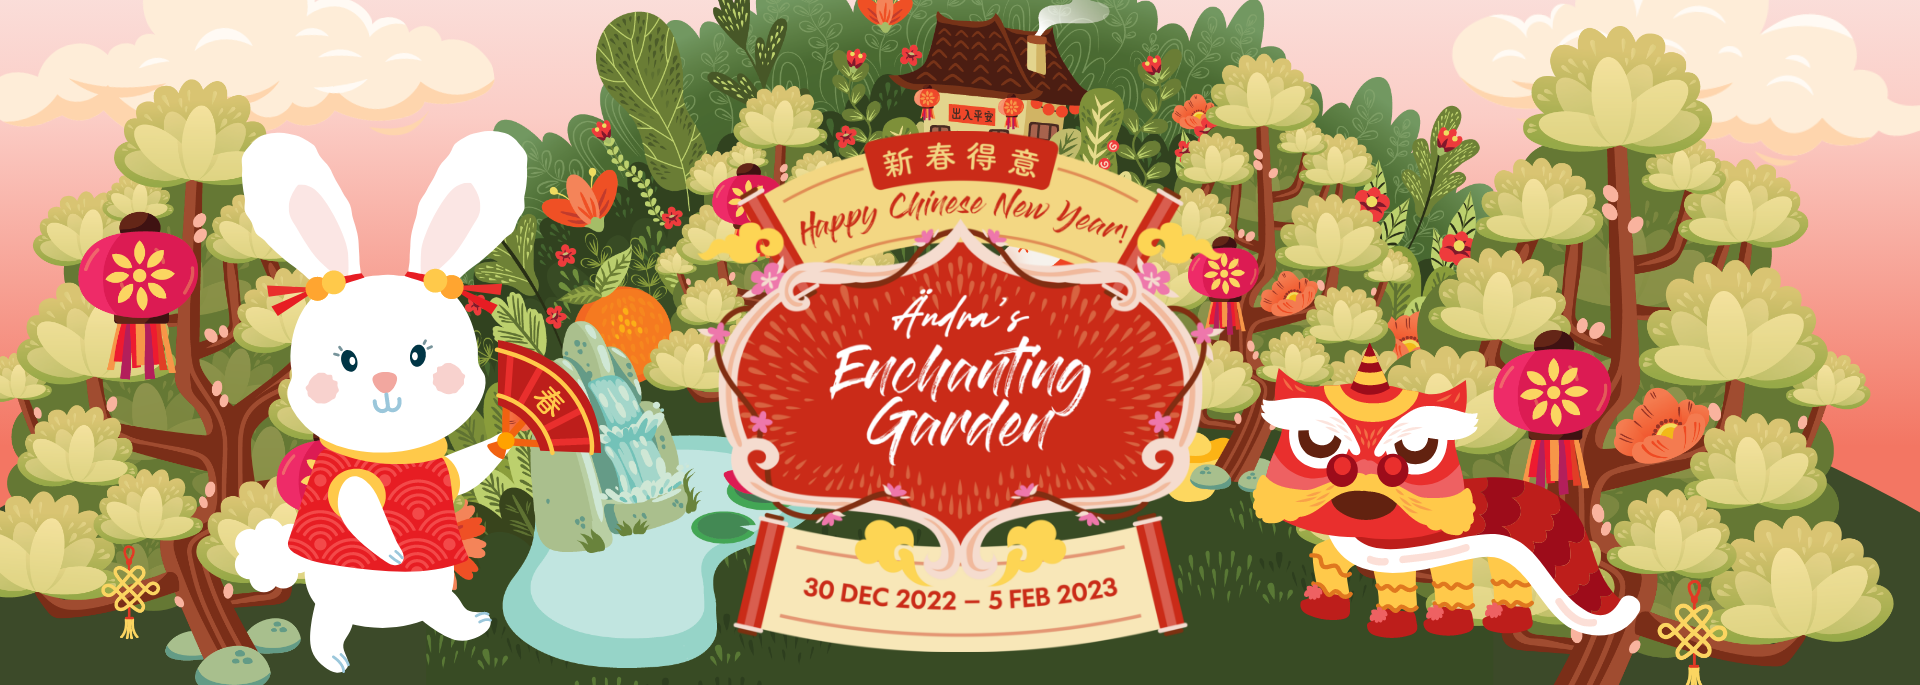 Ändra’s Enchanting Garden CNY